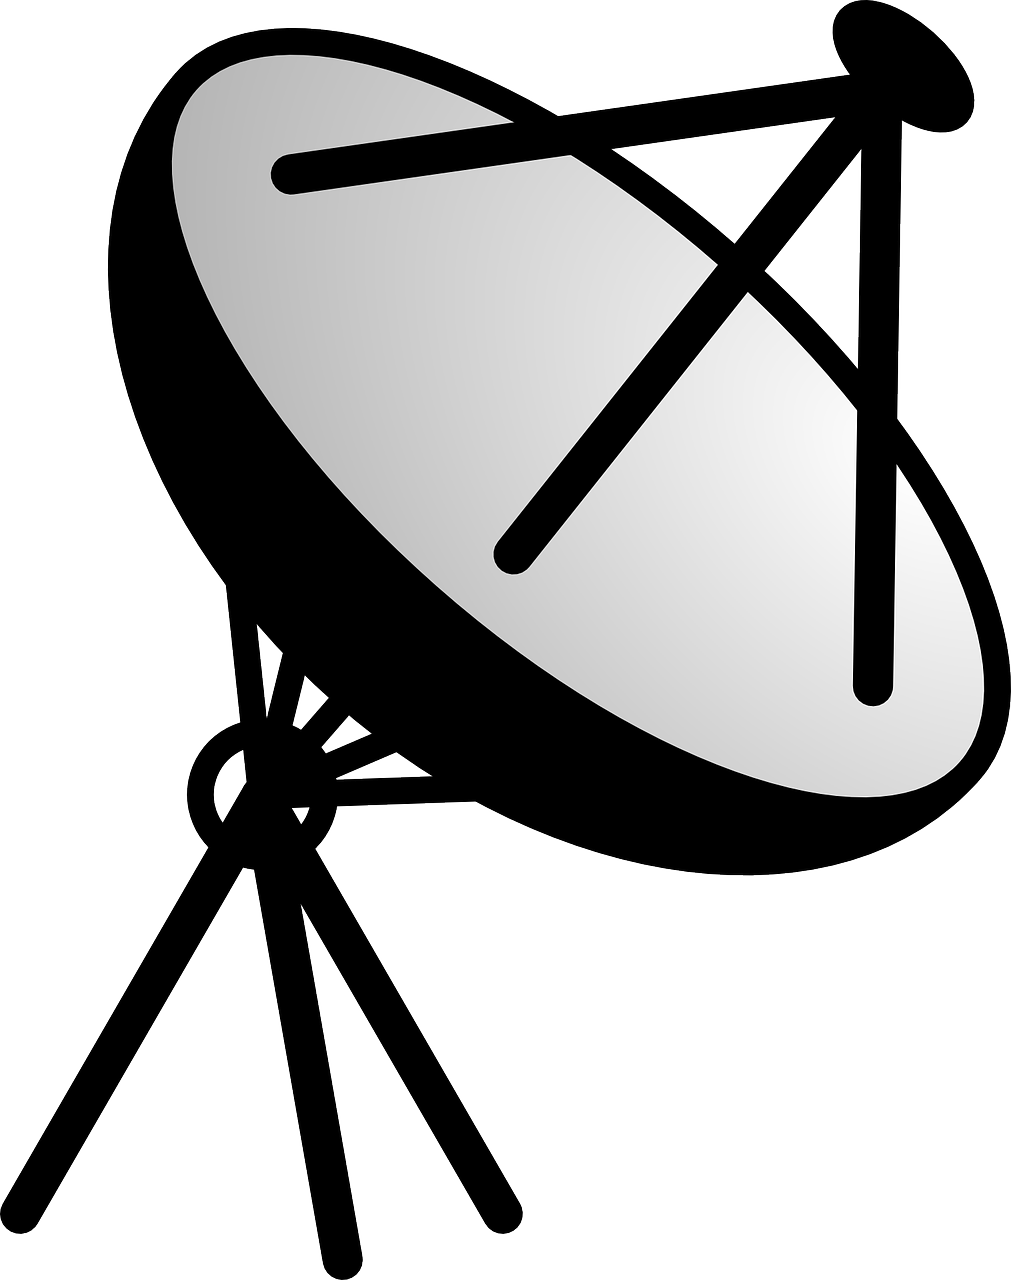 Satellite Dish Antenna Logo